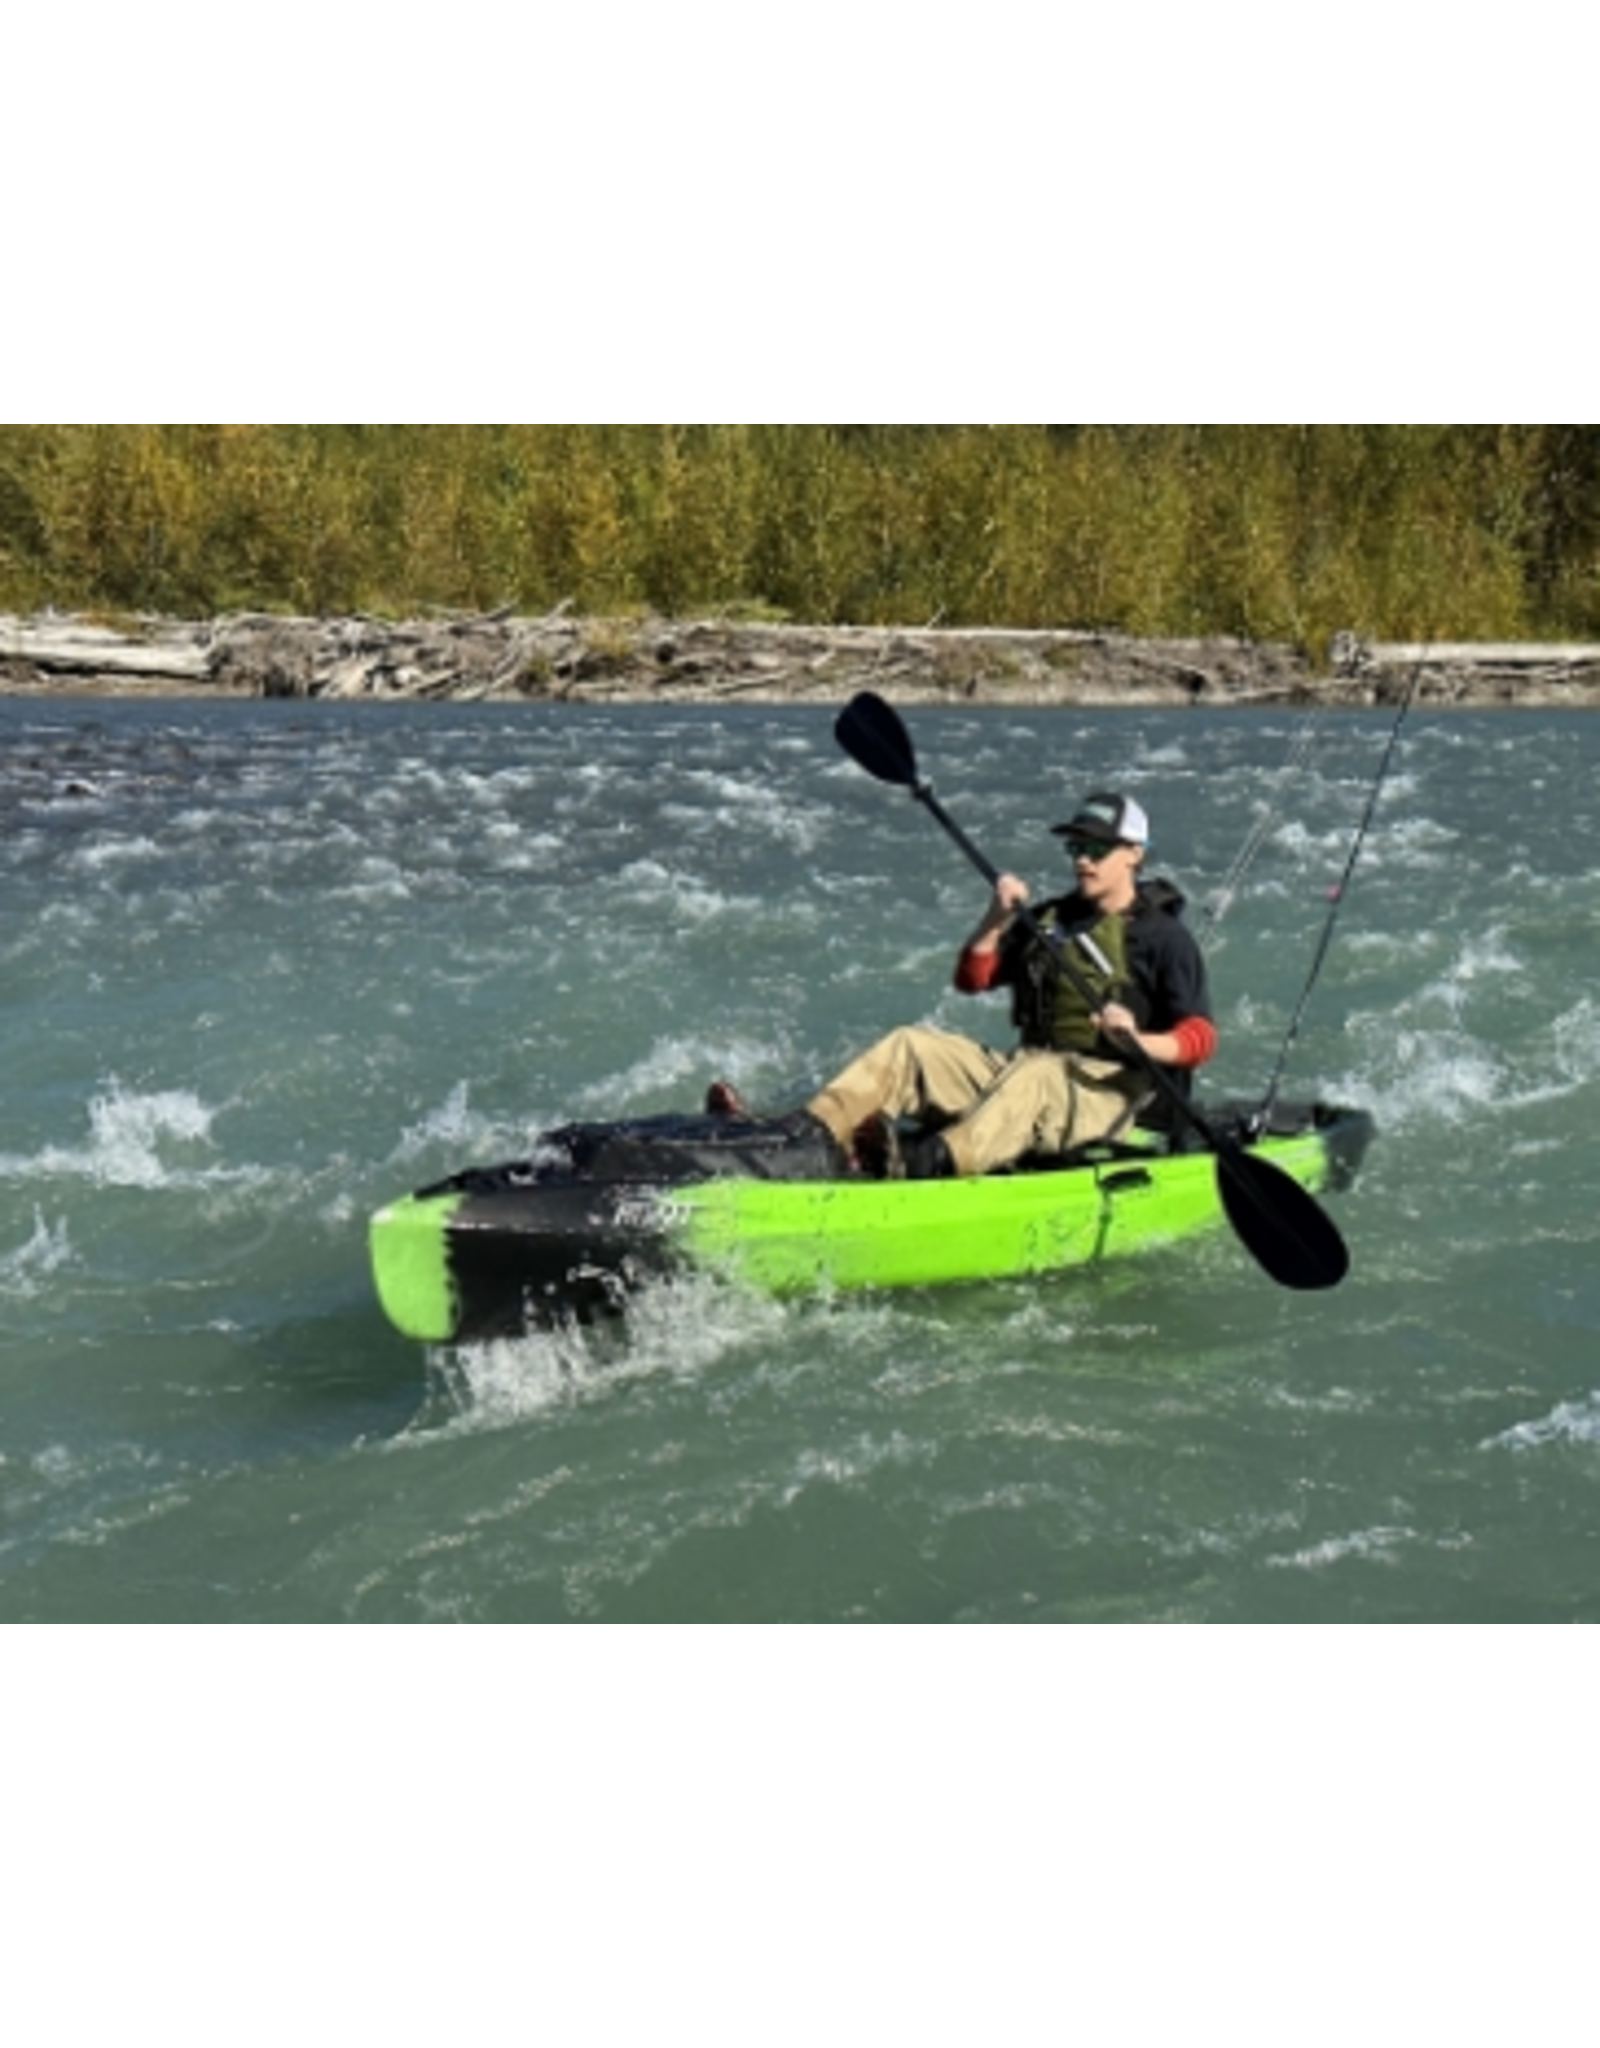 NuCanoe Nucanoe Kayak Flint